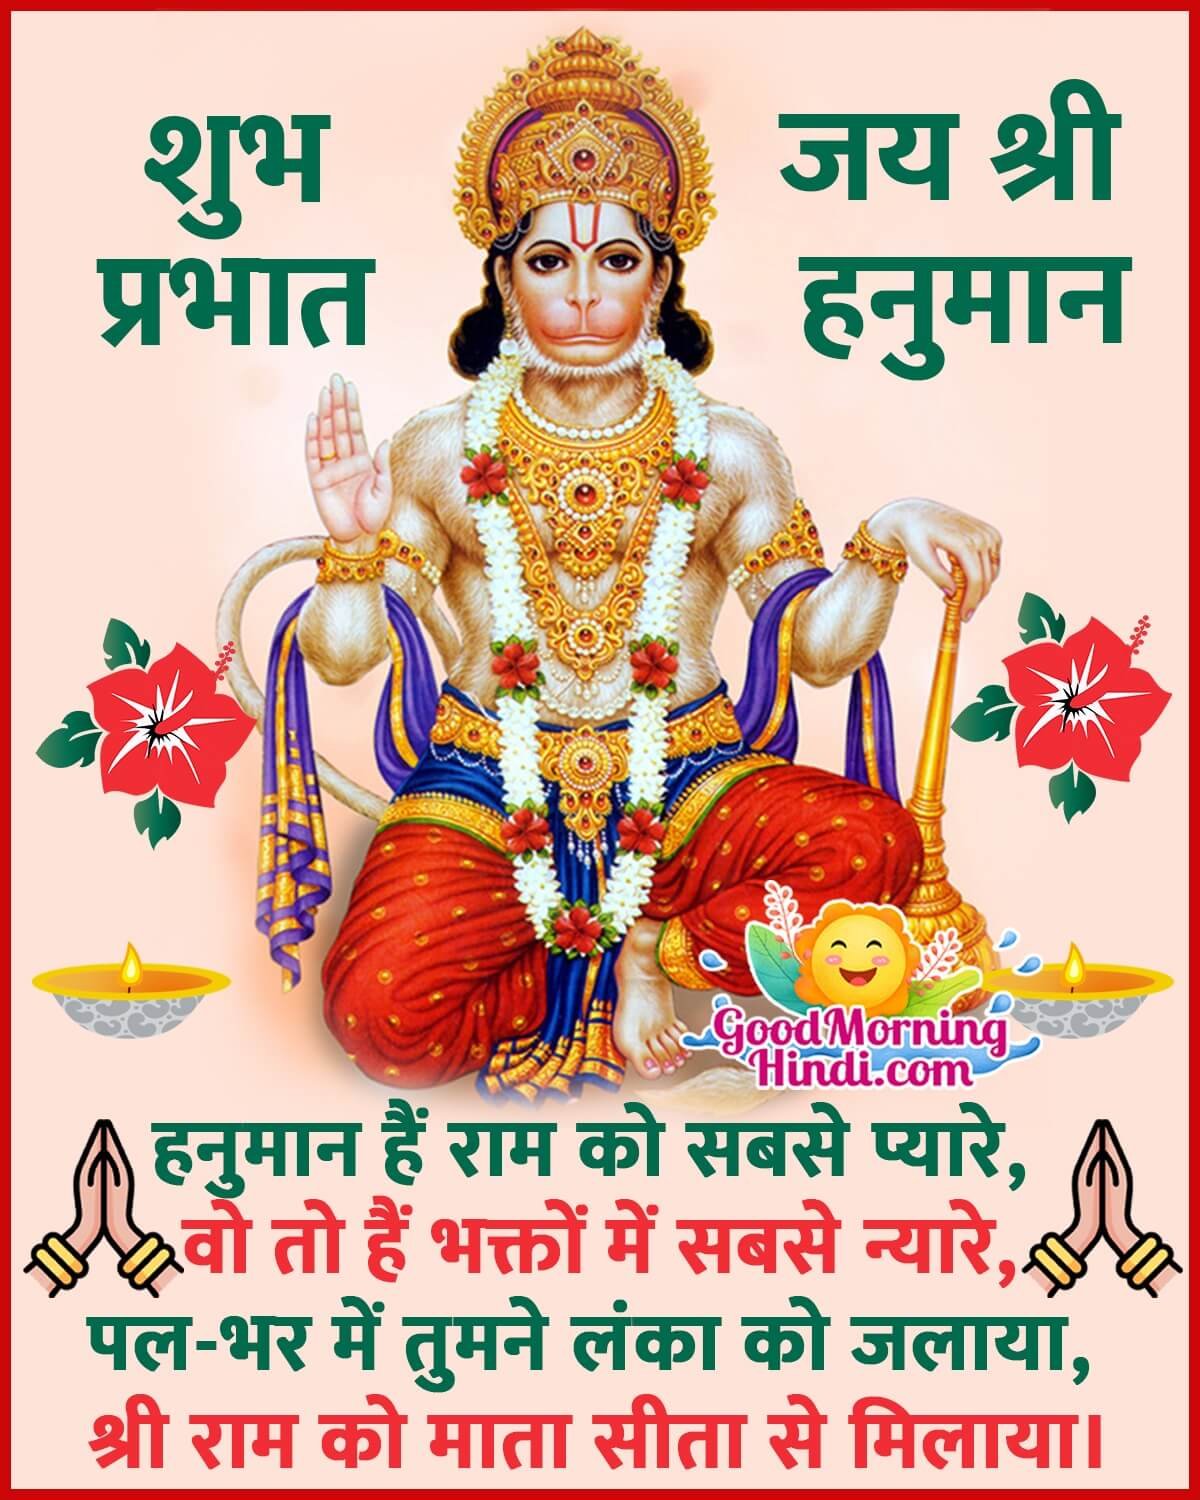 Shubh Prabhat Jai Shri Hanuman Shayari